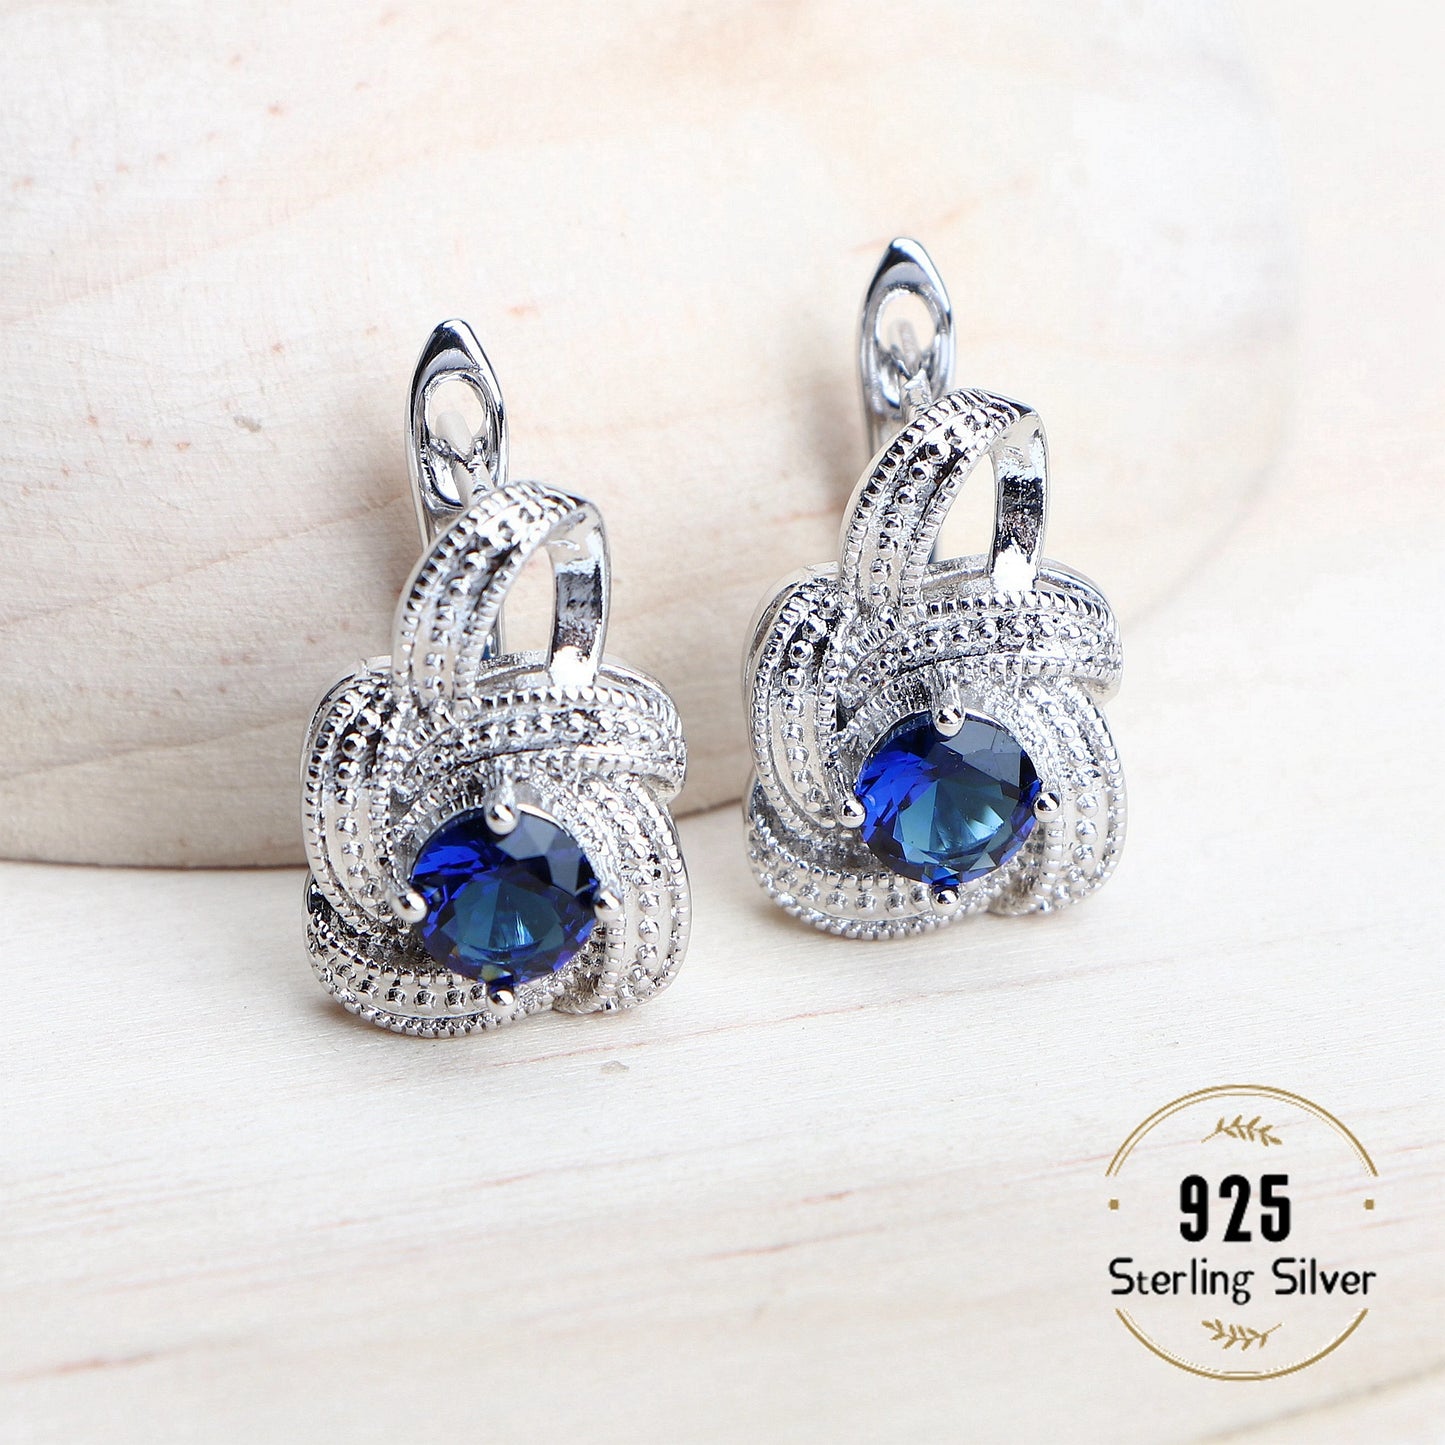 Blue Zirconia Women Jewelry Sets 925 Sterling Silver Wedding Bridal Costume Jewellery Earrings Rings Bracelets Pendant Necklace